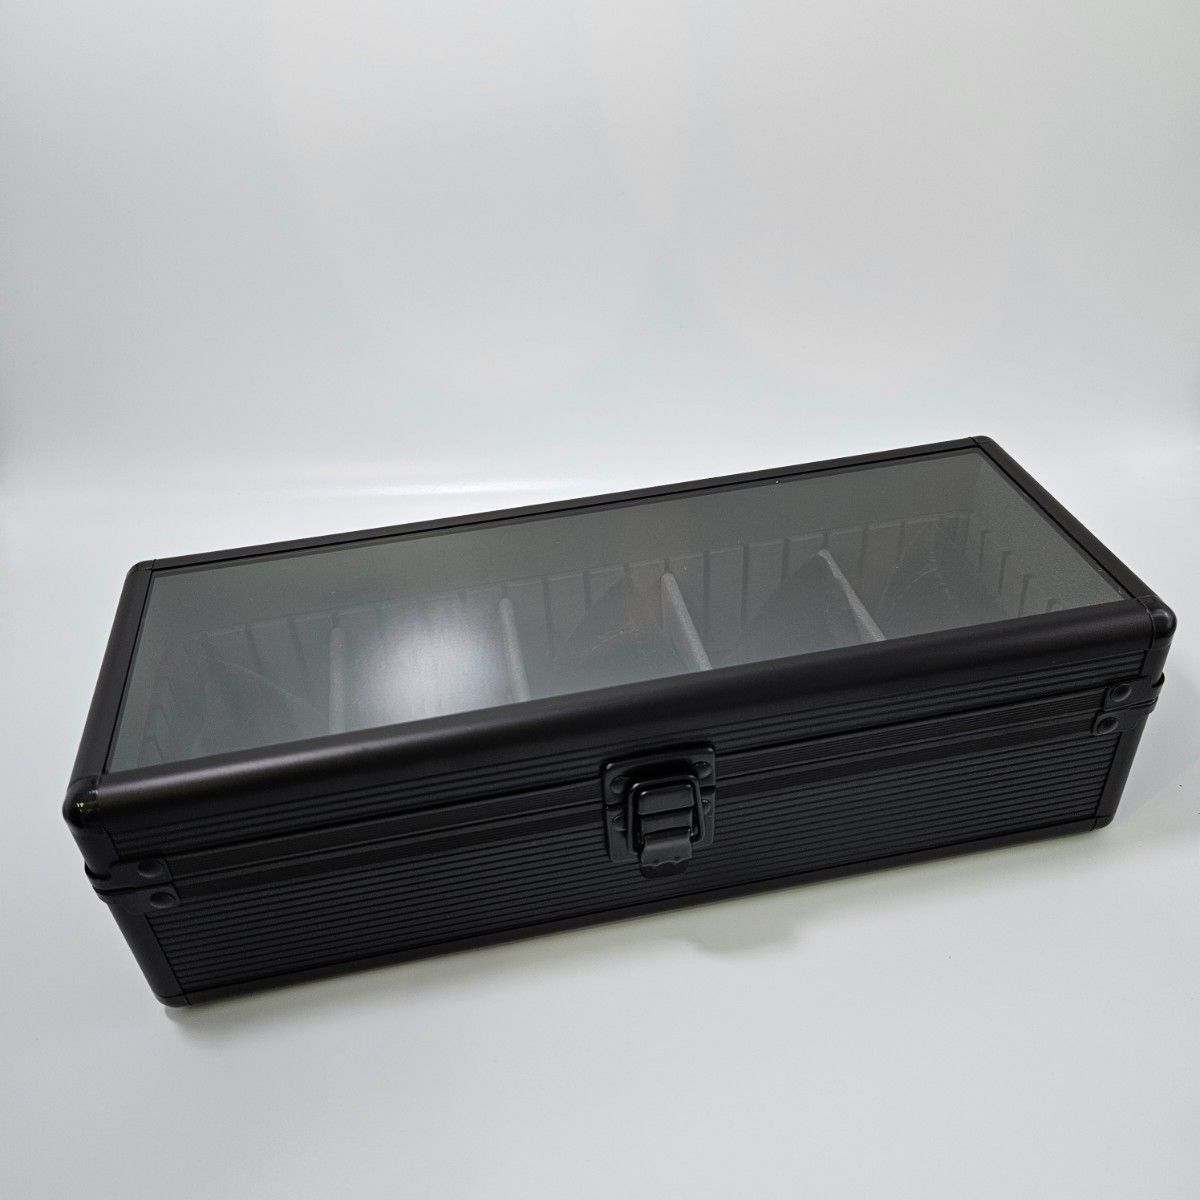 【アルミニウム合金】新品  ウォッチケース  時計  収納  コレクション  ボックス   ブラック  ガラス天板  ディスプレイ